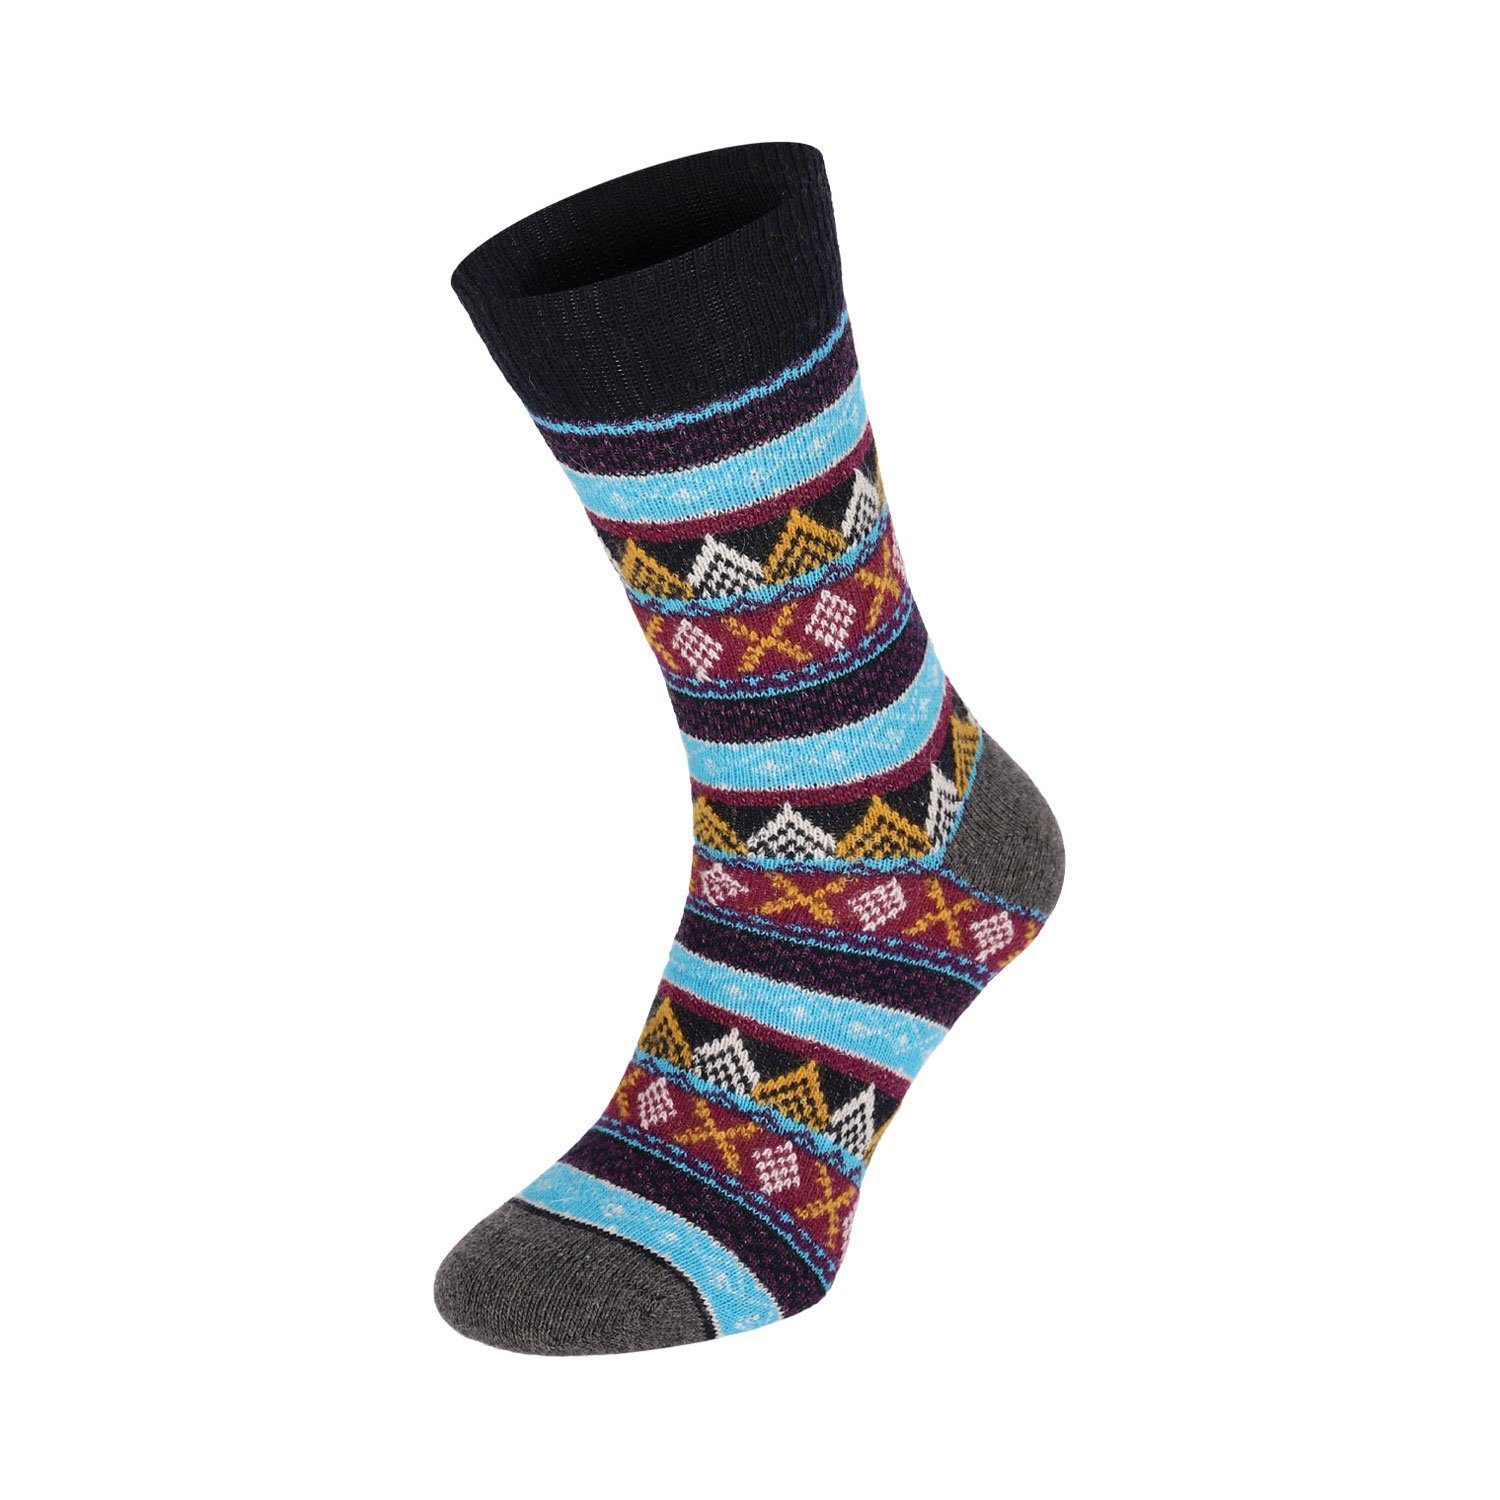 Wolle Damen Paar Lifestyle Schaf Socken Warm farbig Wool Herren Strümpfe Winter 4 Color Chili